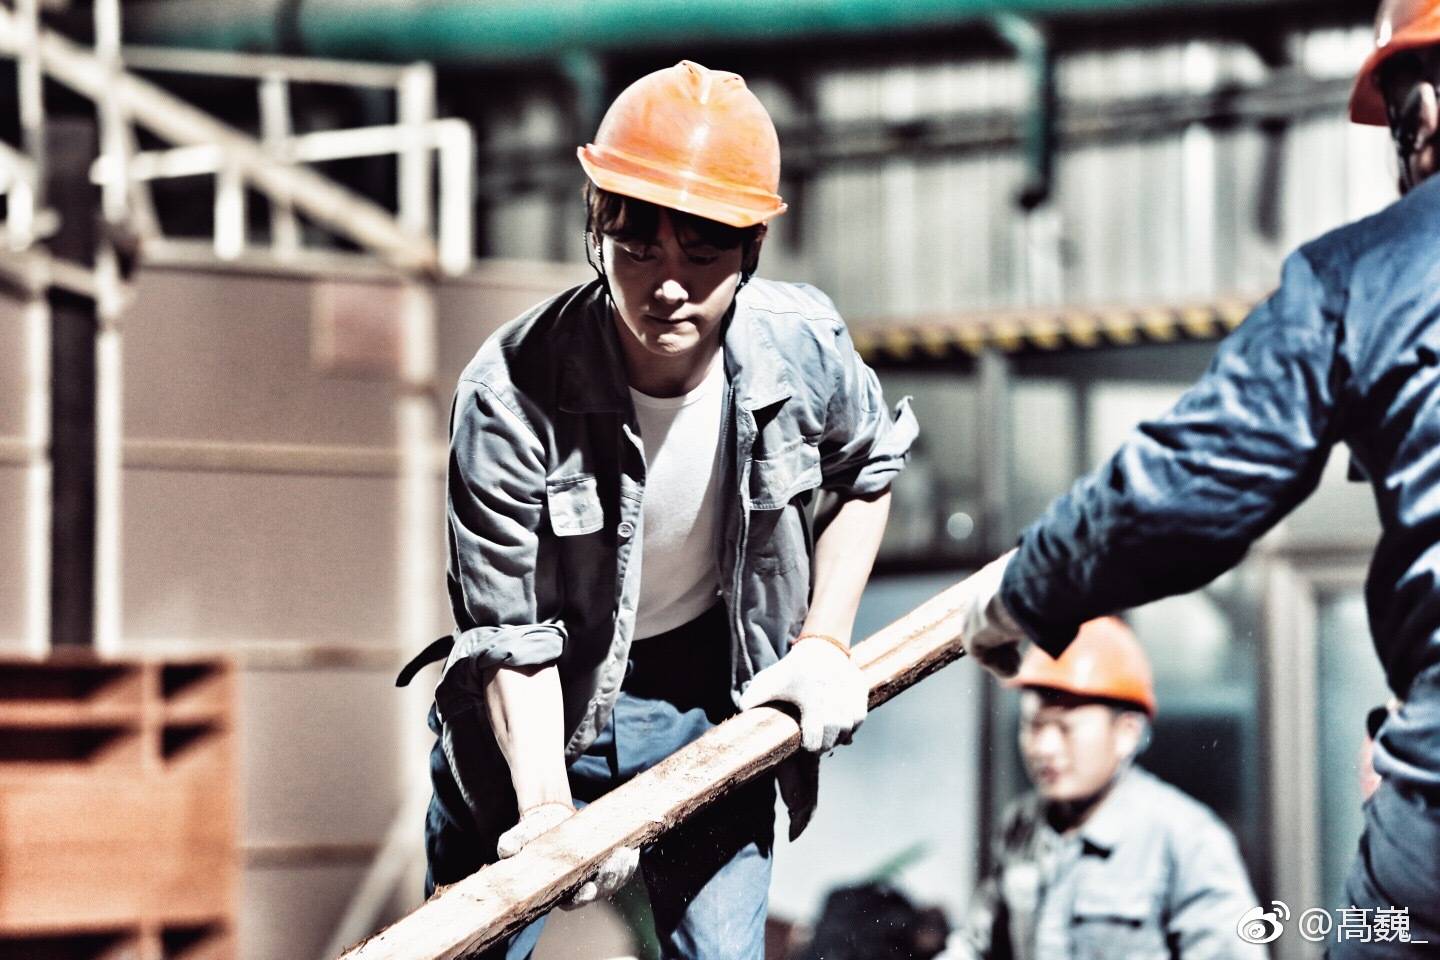 最近马天宇的民工造型也遭到了曝光,一组在工地干活的照片讨论度极高